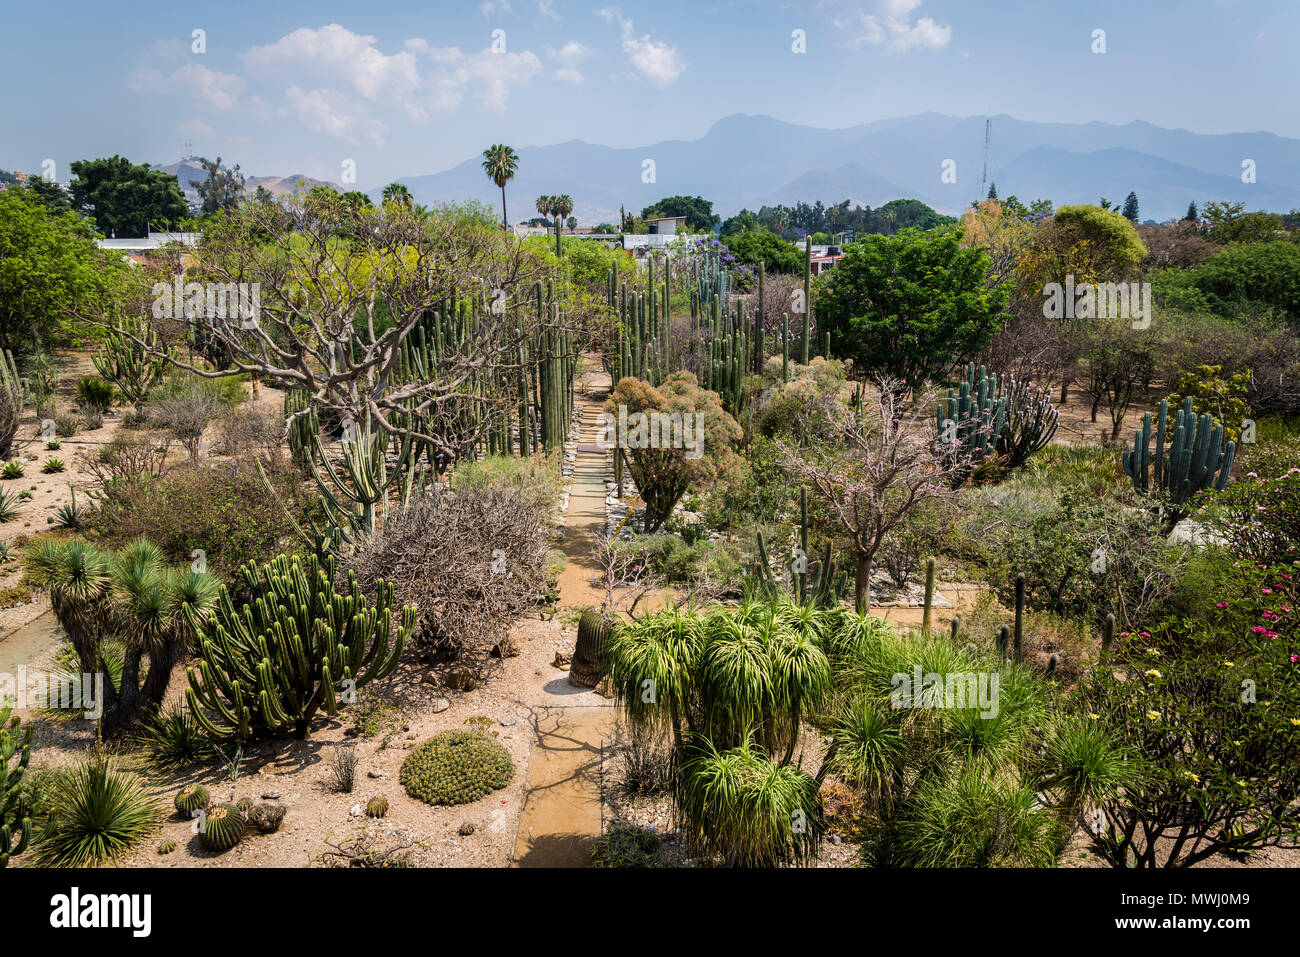 Museum of Cultures of Oaxaca, former Santo Domingo de Guzman convent, Botanical garden, Oaxaca, Mexico Stock Photo